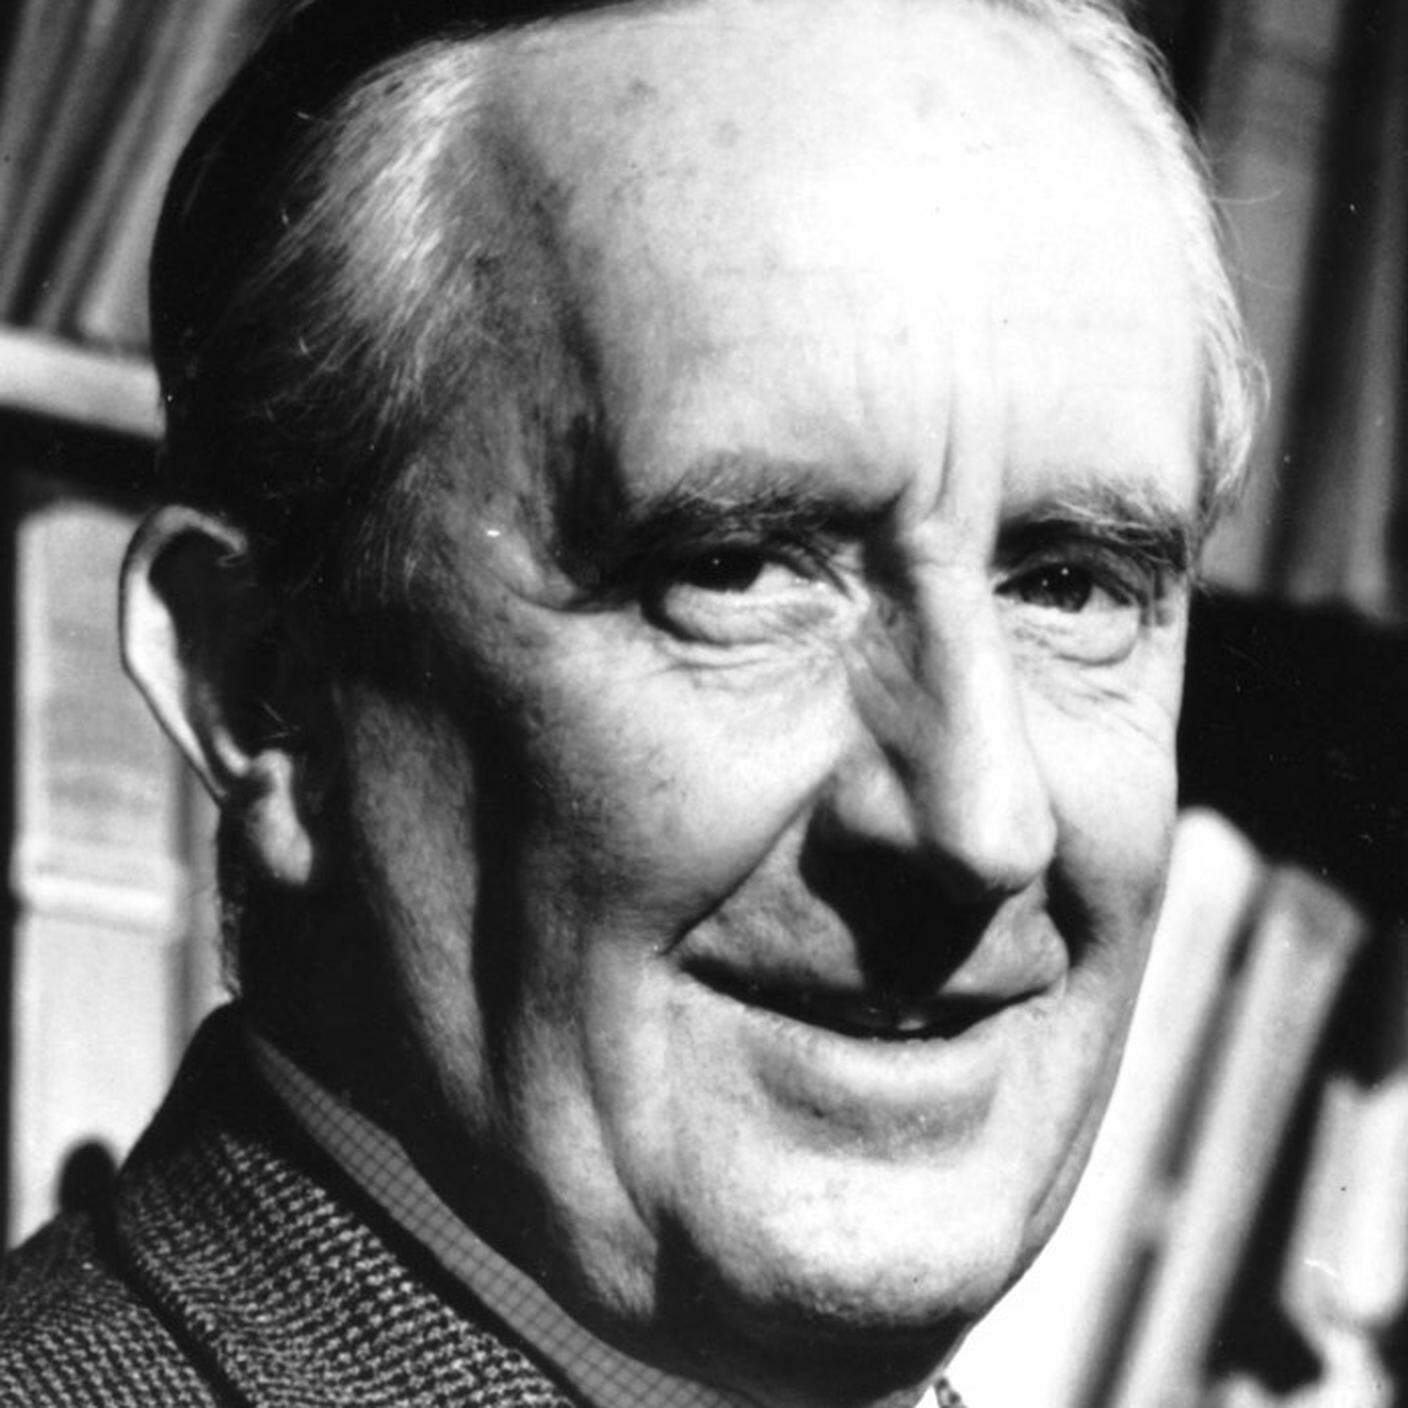 J.R.R. Tolkien 